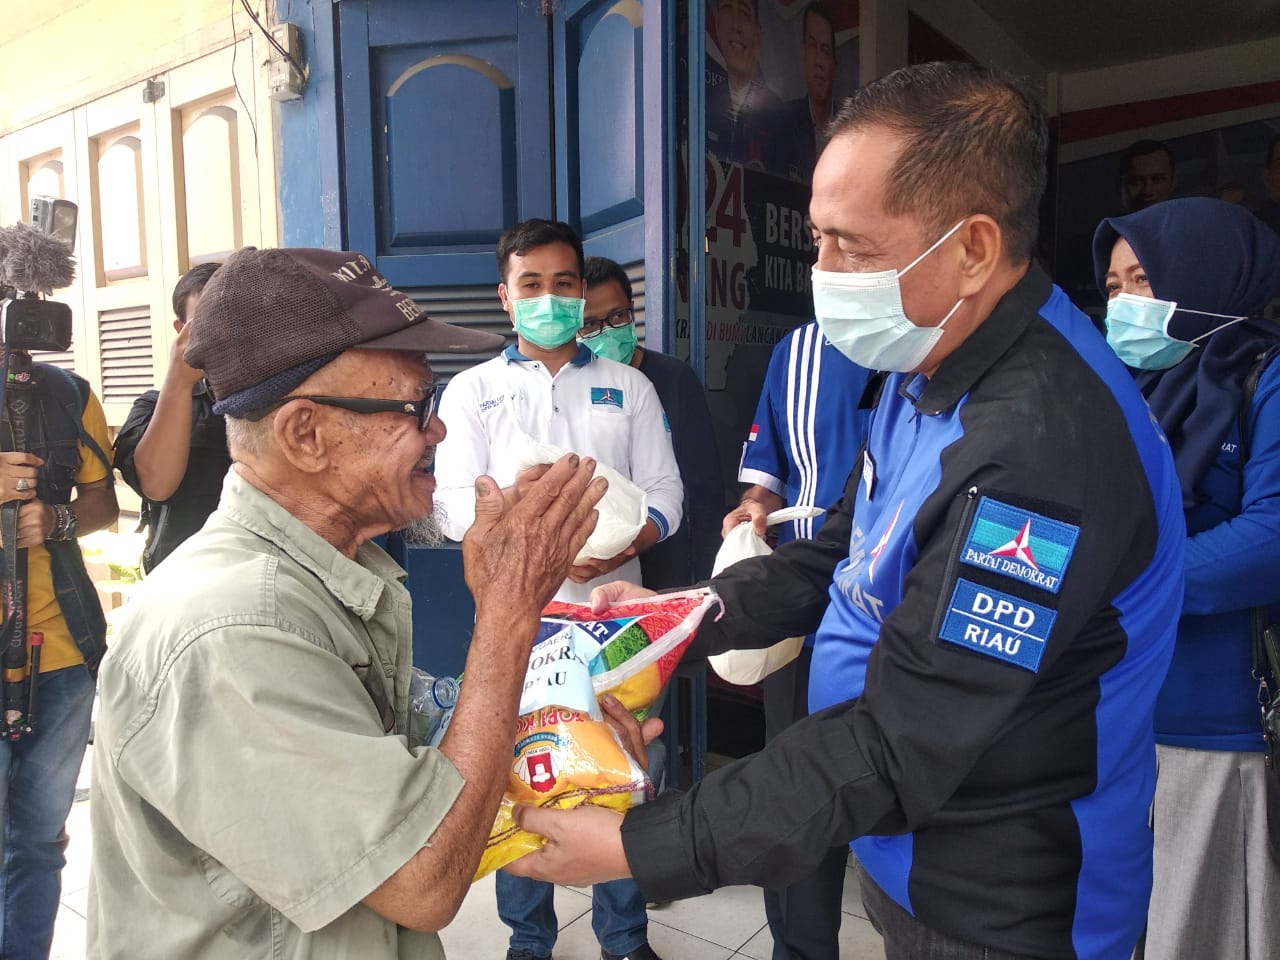 Demokrat Riau Gelar Bulan Bakti Untuk Meringankan Beban Masyarakat Terdampak Pandemii